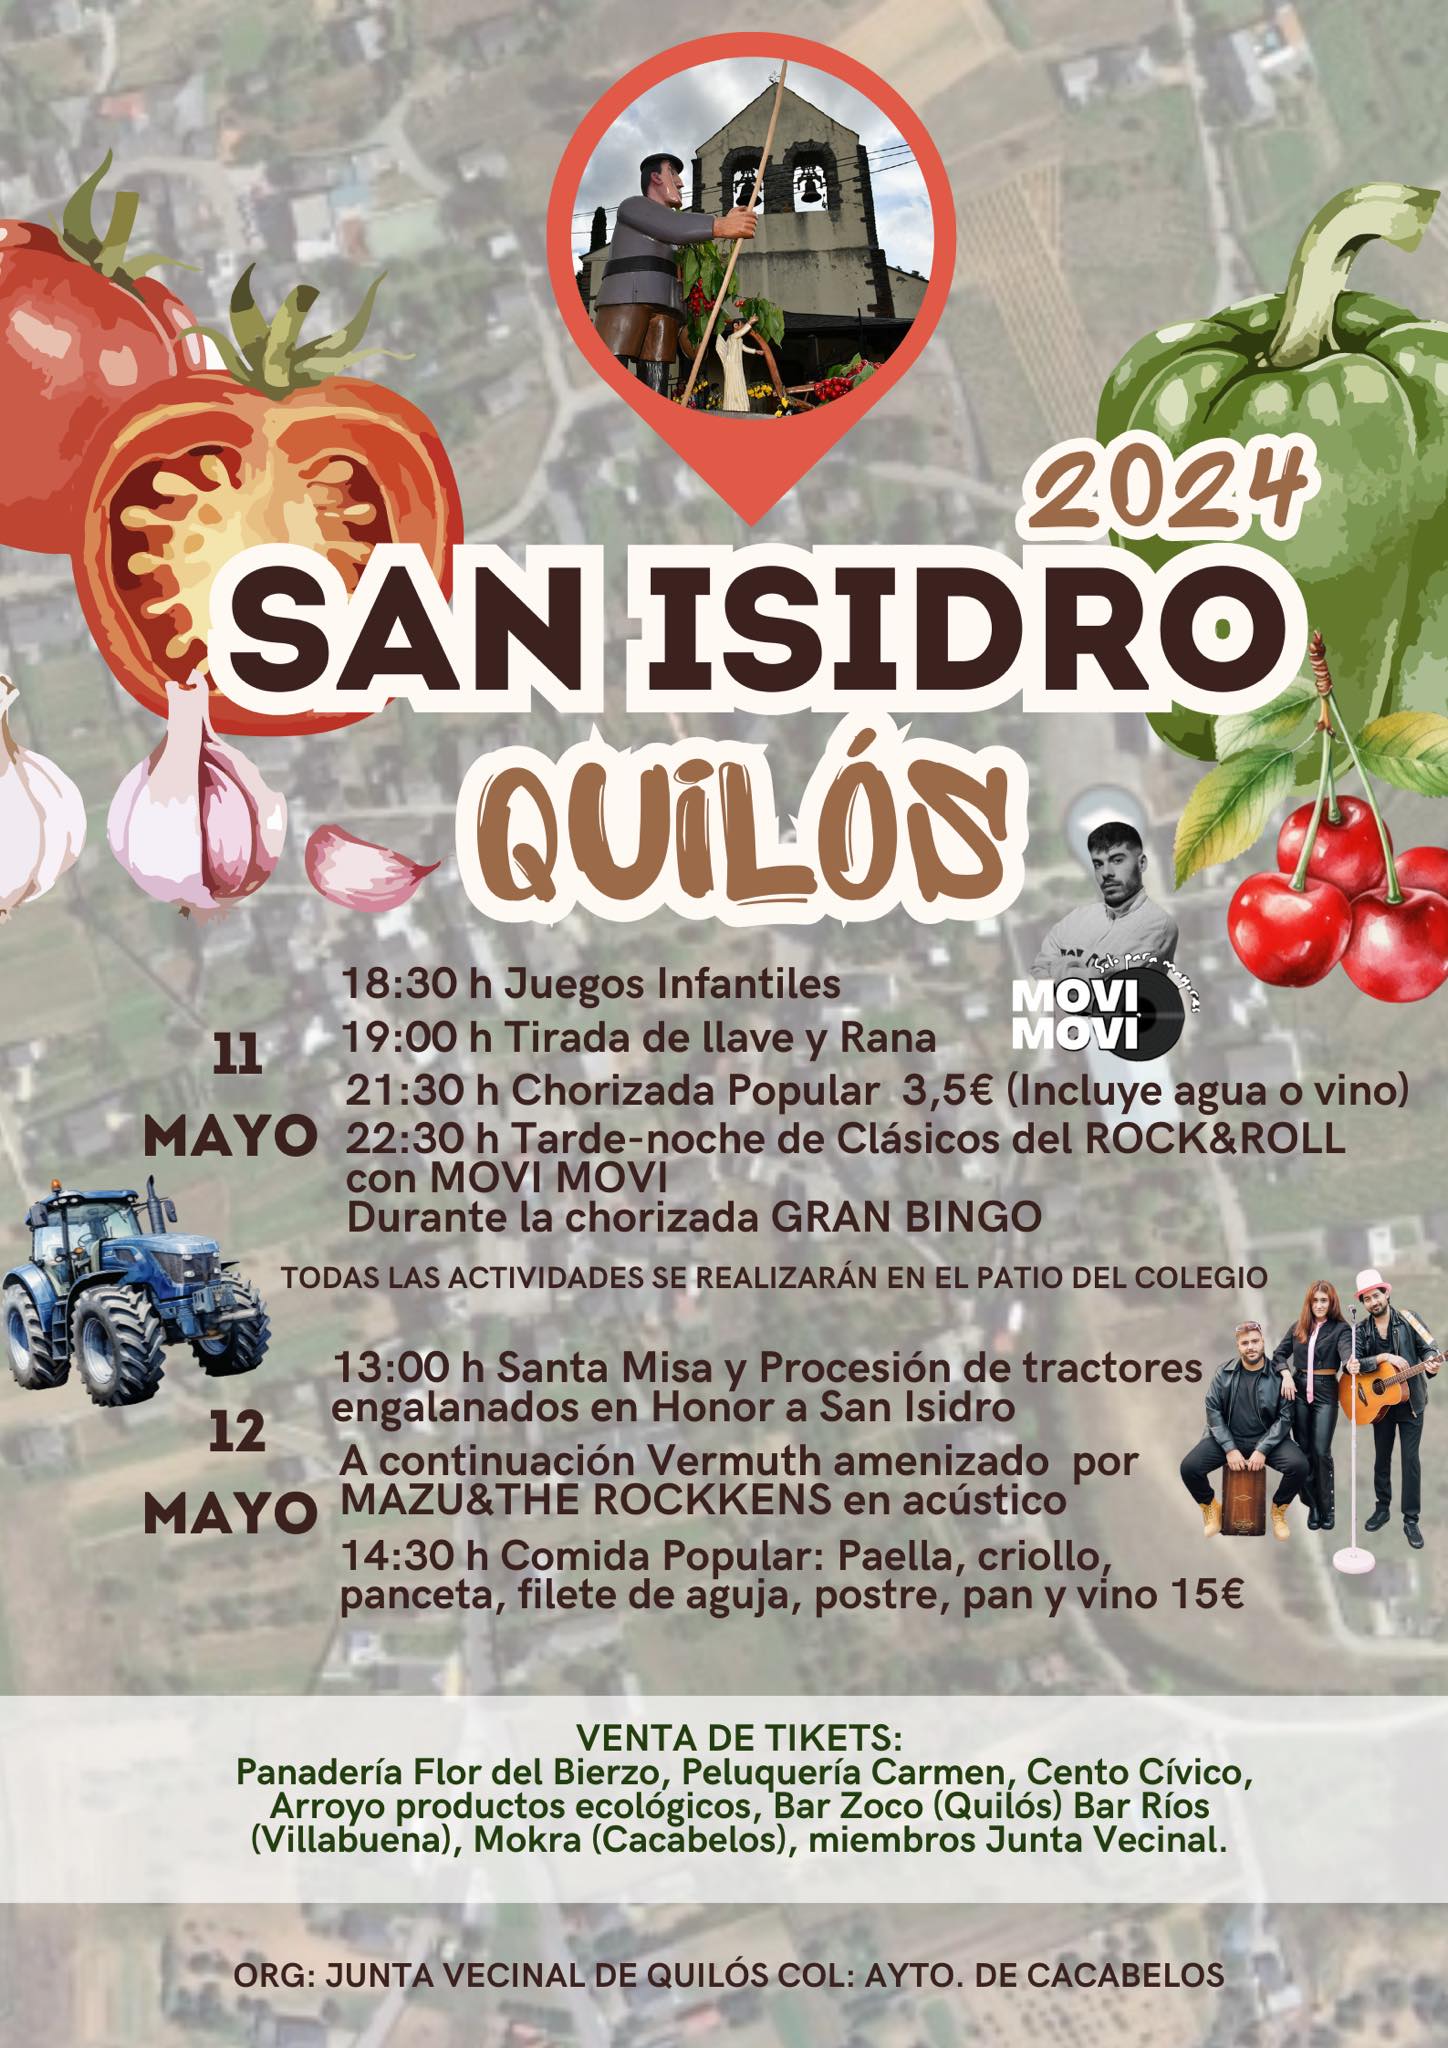 Grandes fiestas en Quilós en honor al patrón San Isidro, los días 11 y 12 de mayo 2